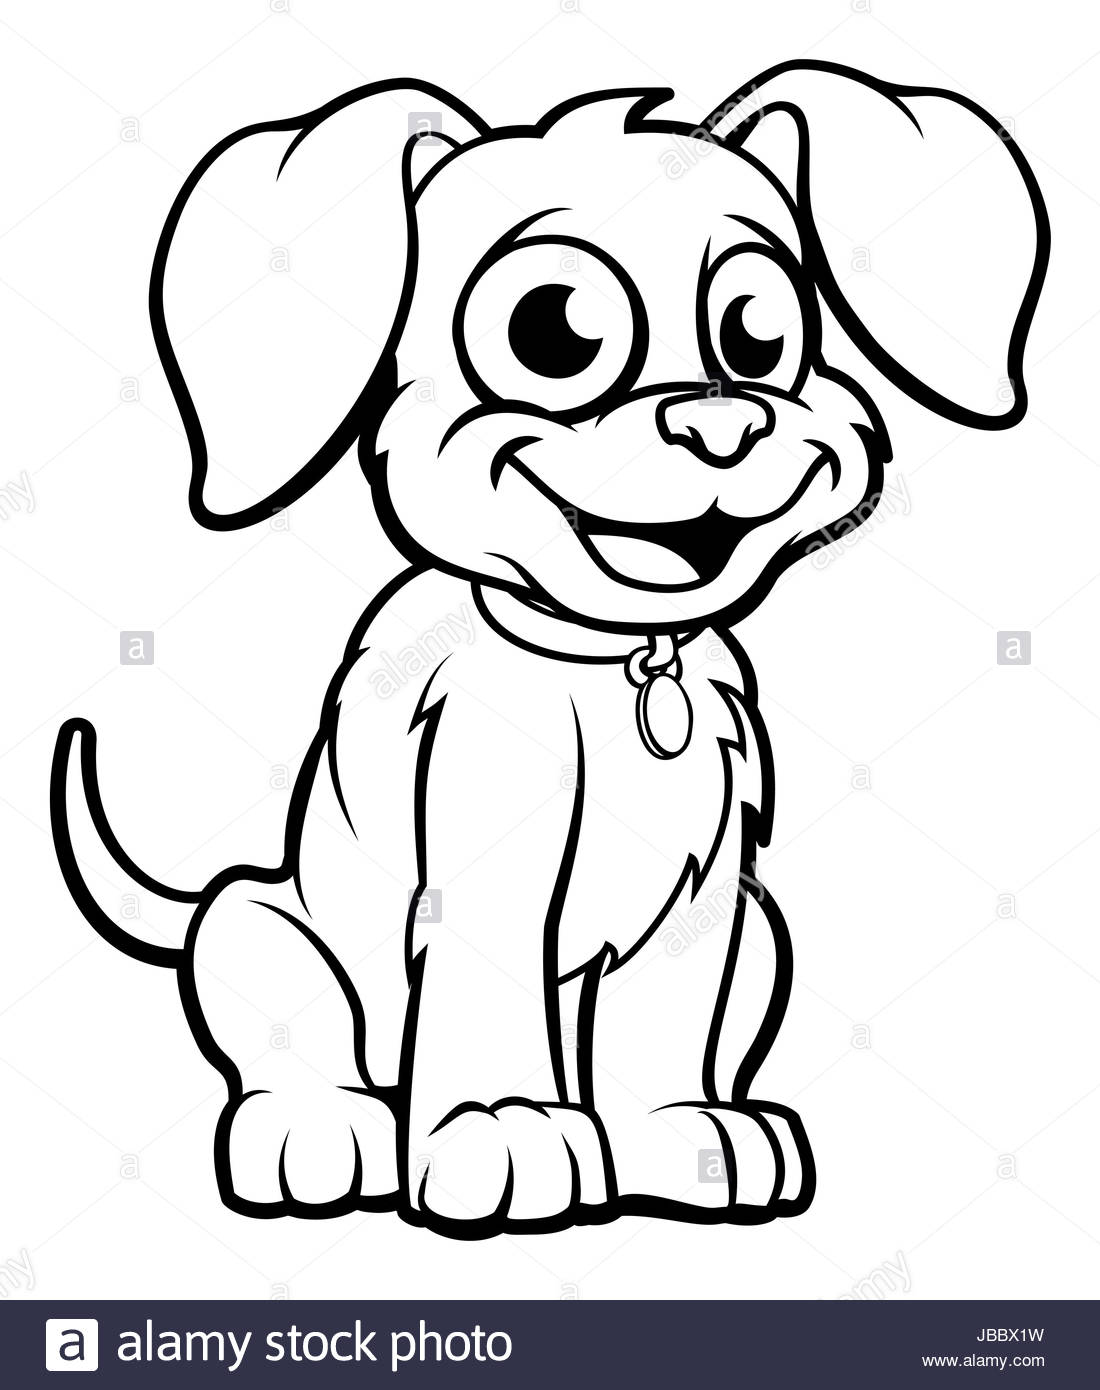 Cartoon Dog Outline Svg Free - Free SVG Images